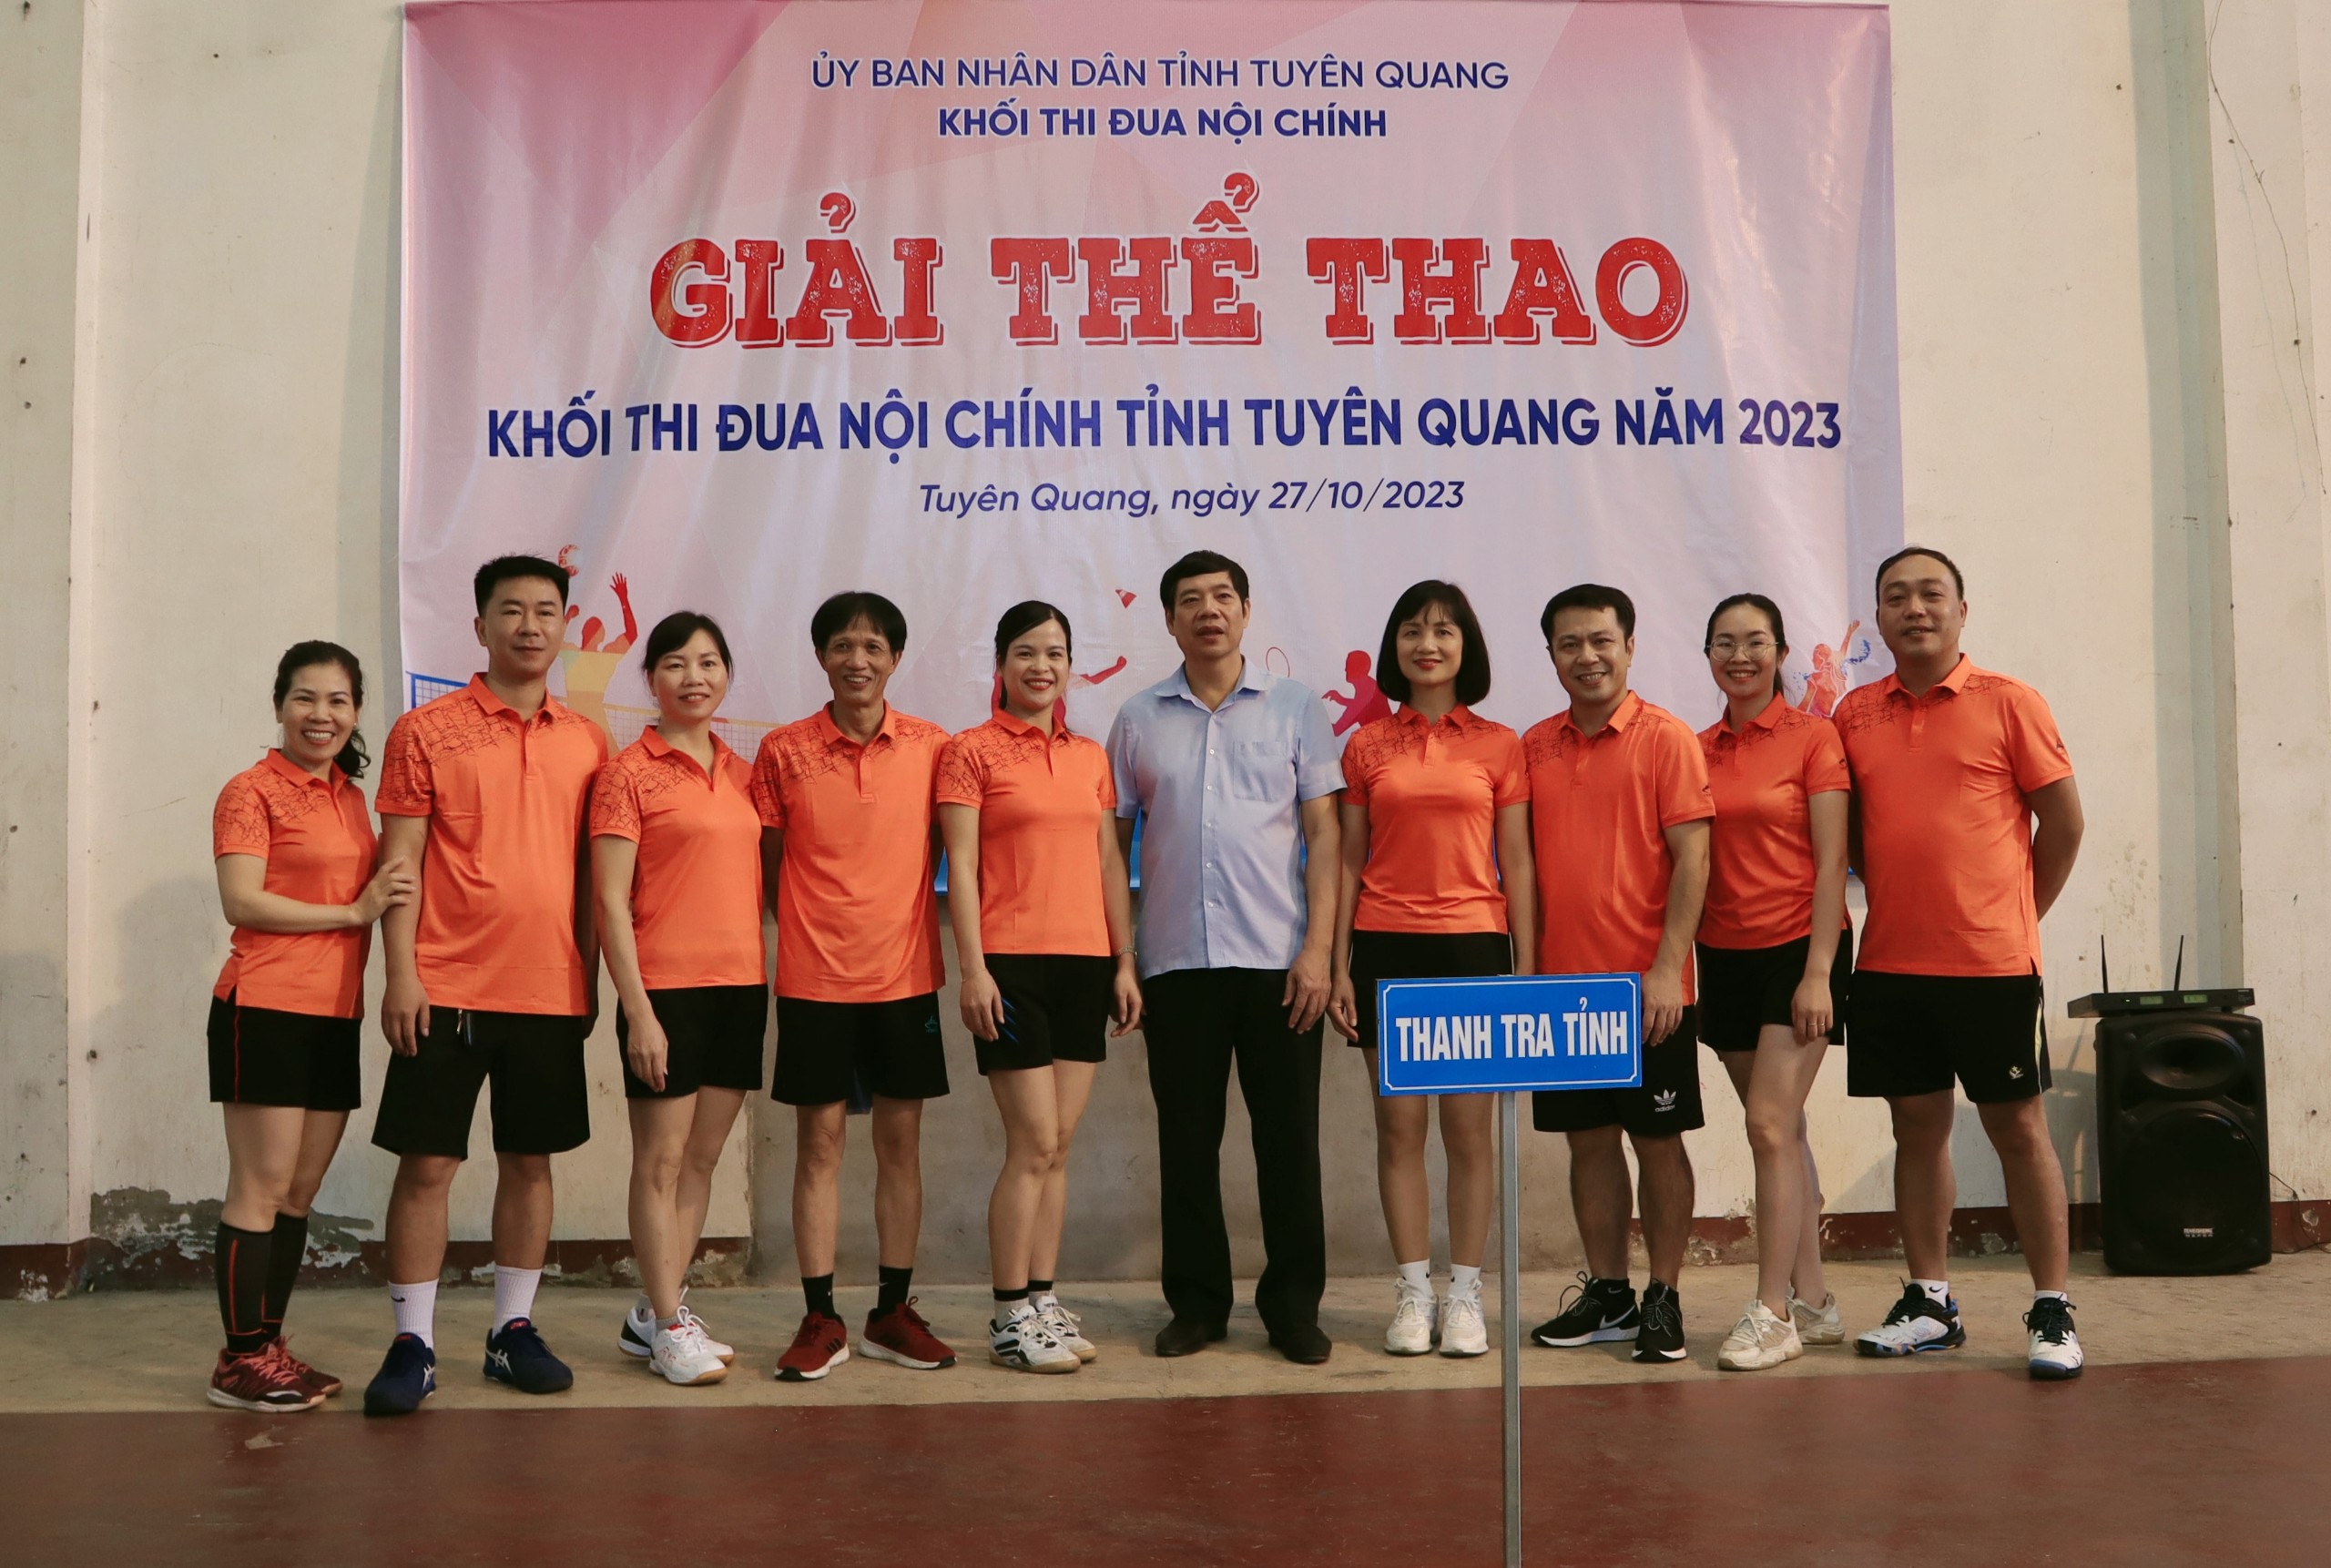 Thanh tra tỉnh tham gia Giải thể thao Khối thi đua Nội chính tỉnh Tuyên Quang